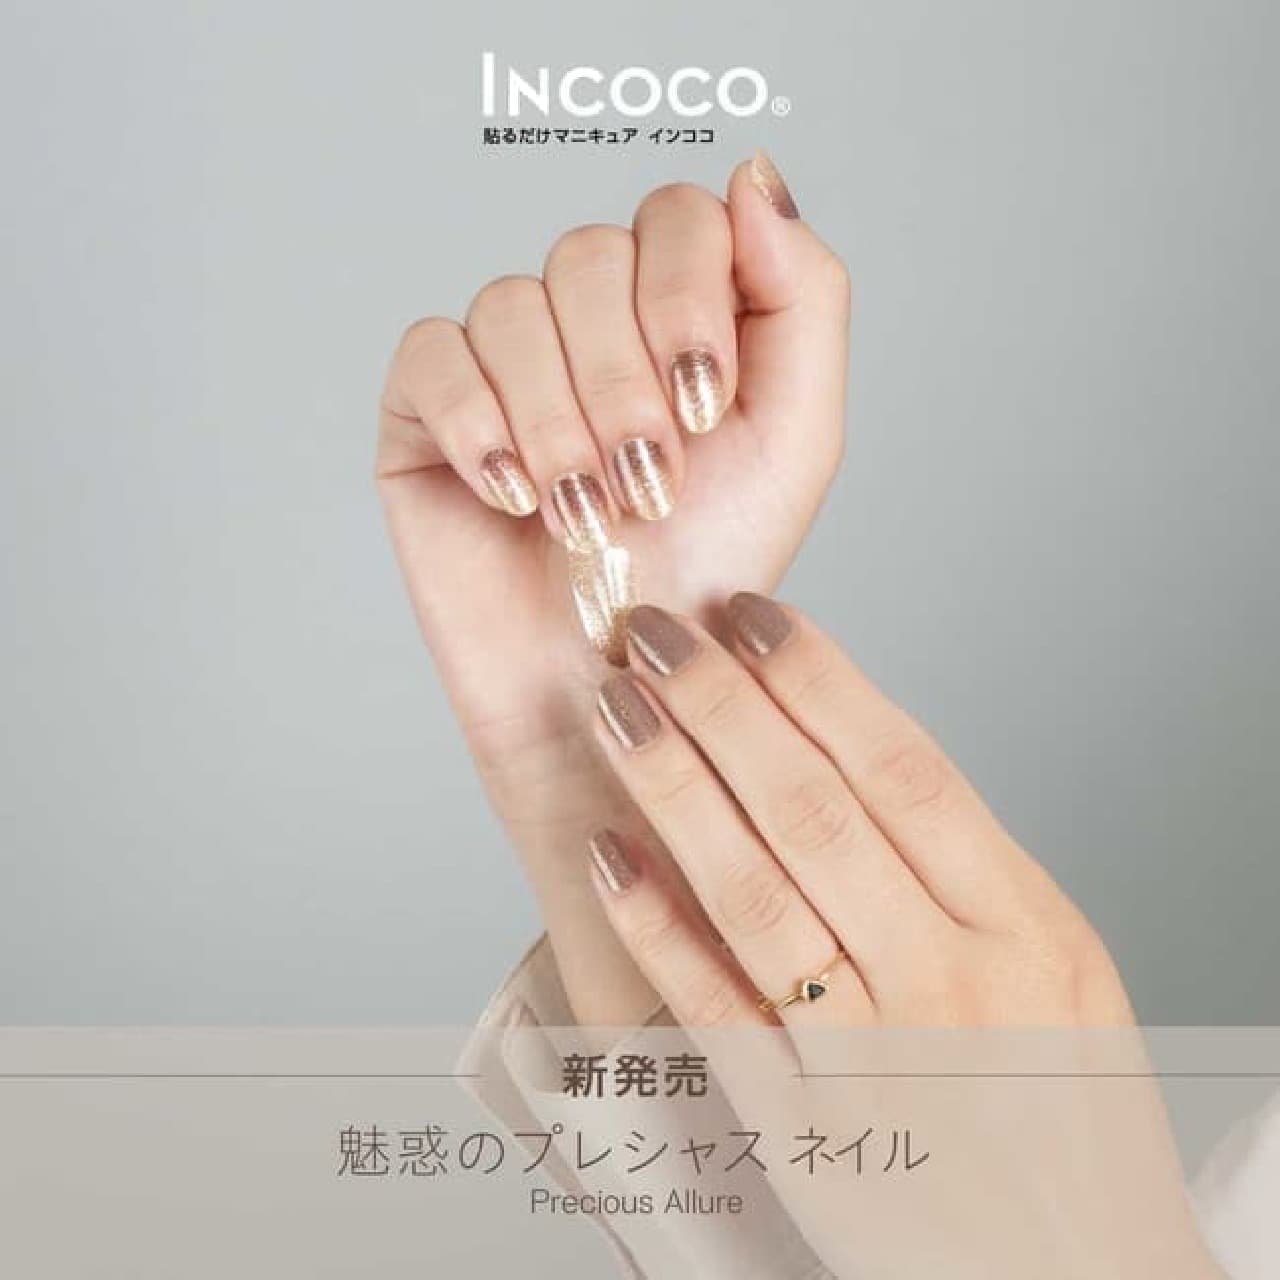 Just paste the manicure "Incoco" Autumn new work "Precious Allure"